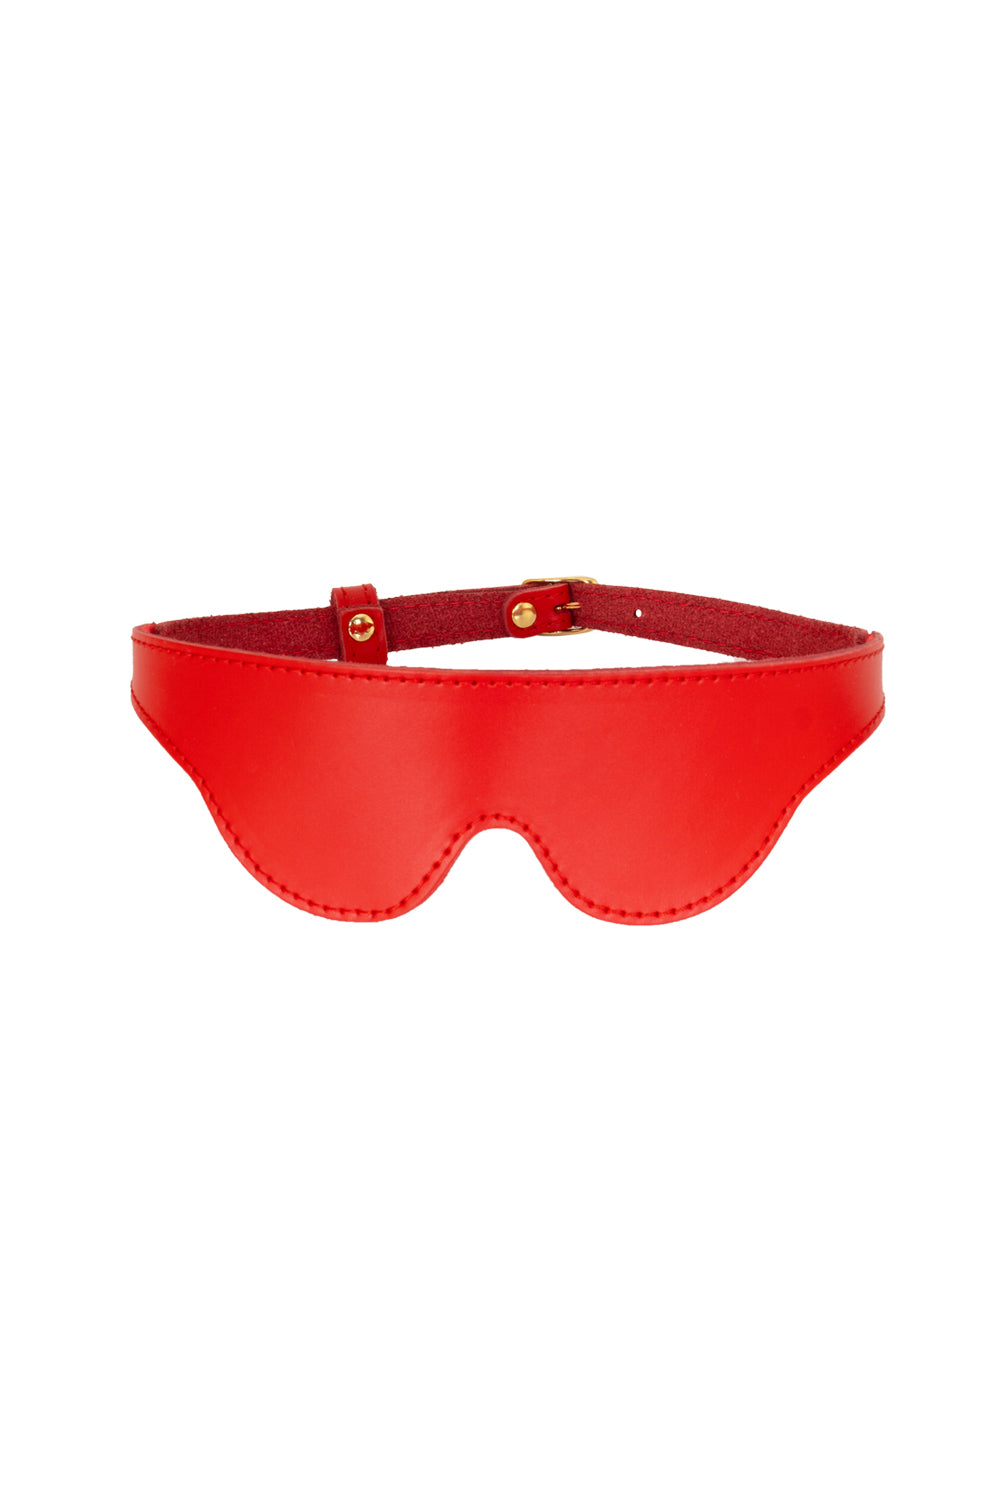 Red Leather BDSM blindfold, BDSM eye mask